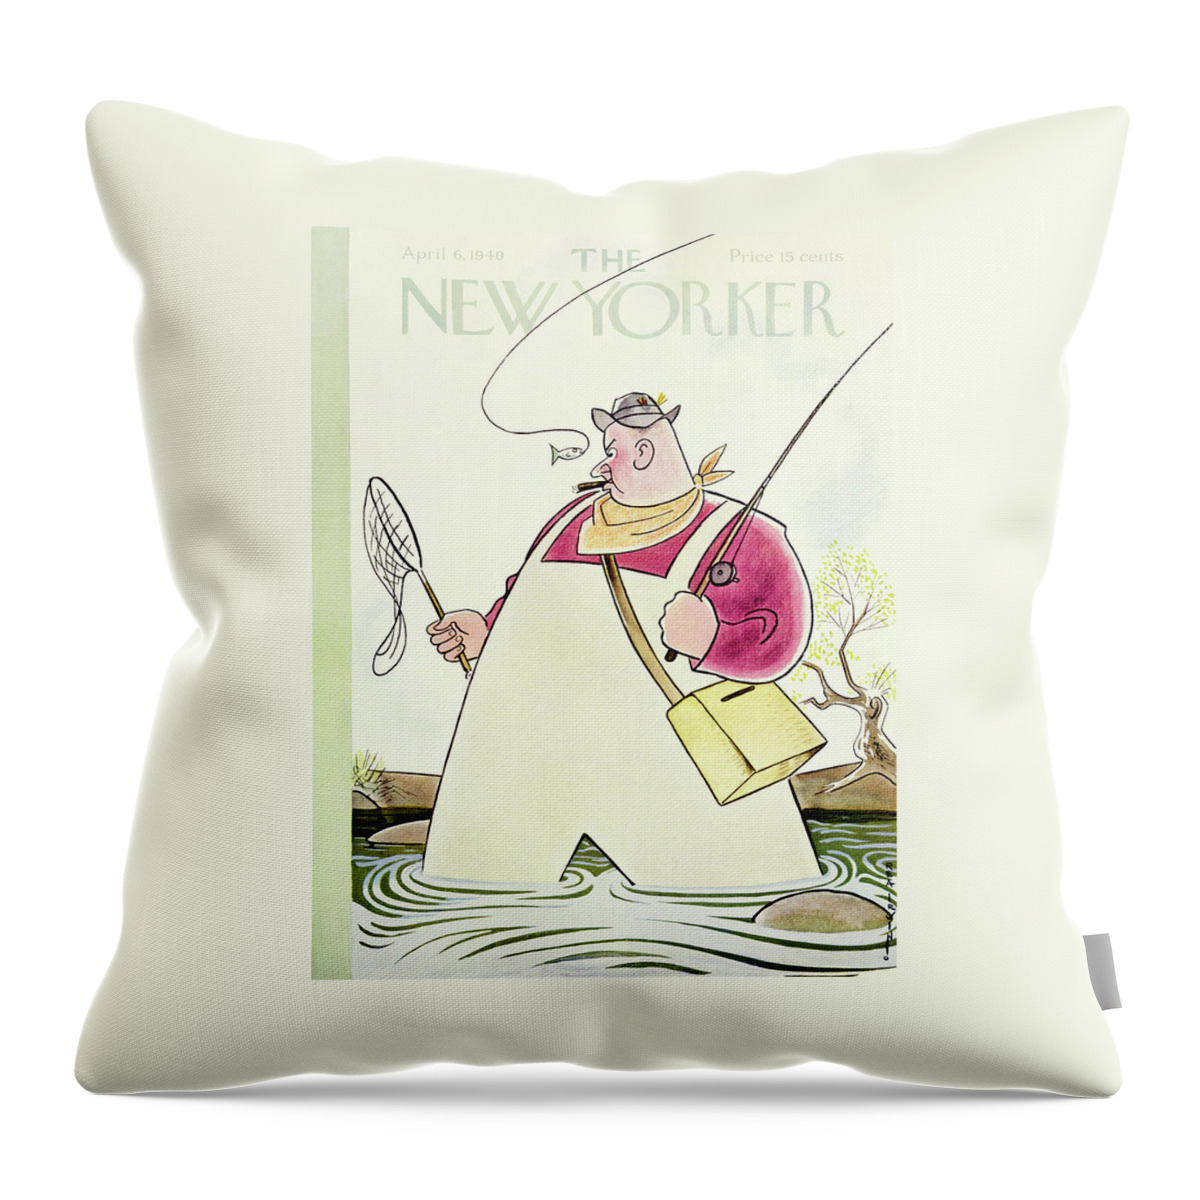 New Yorker April 6 1940 Throw Pillow